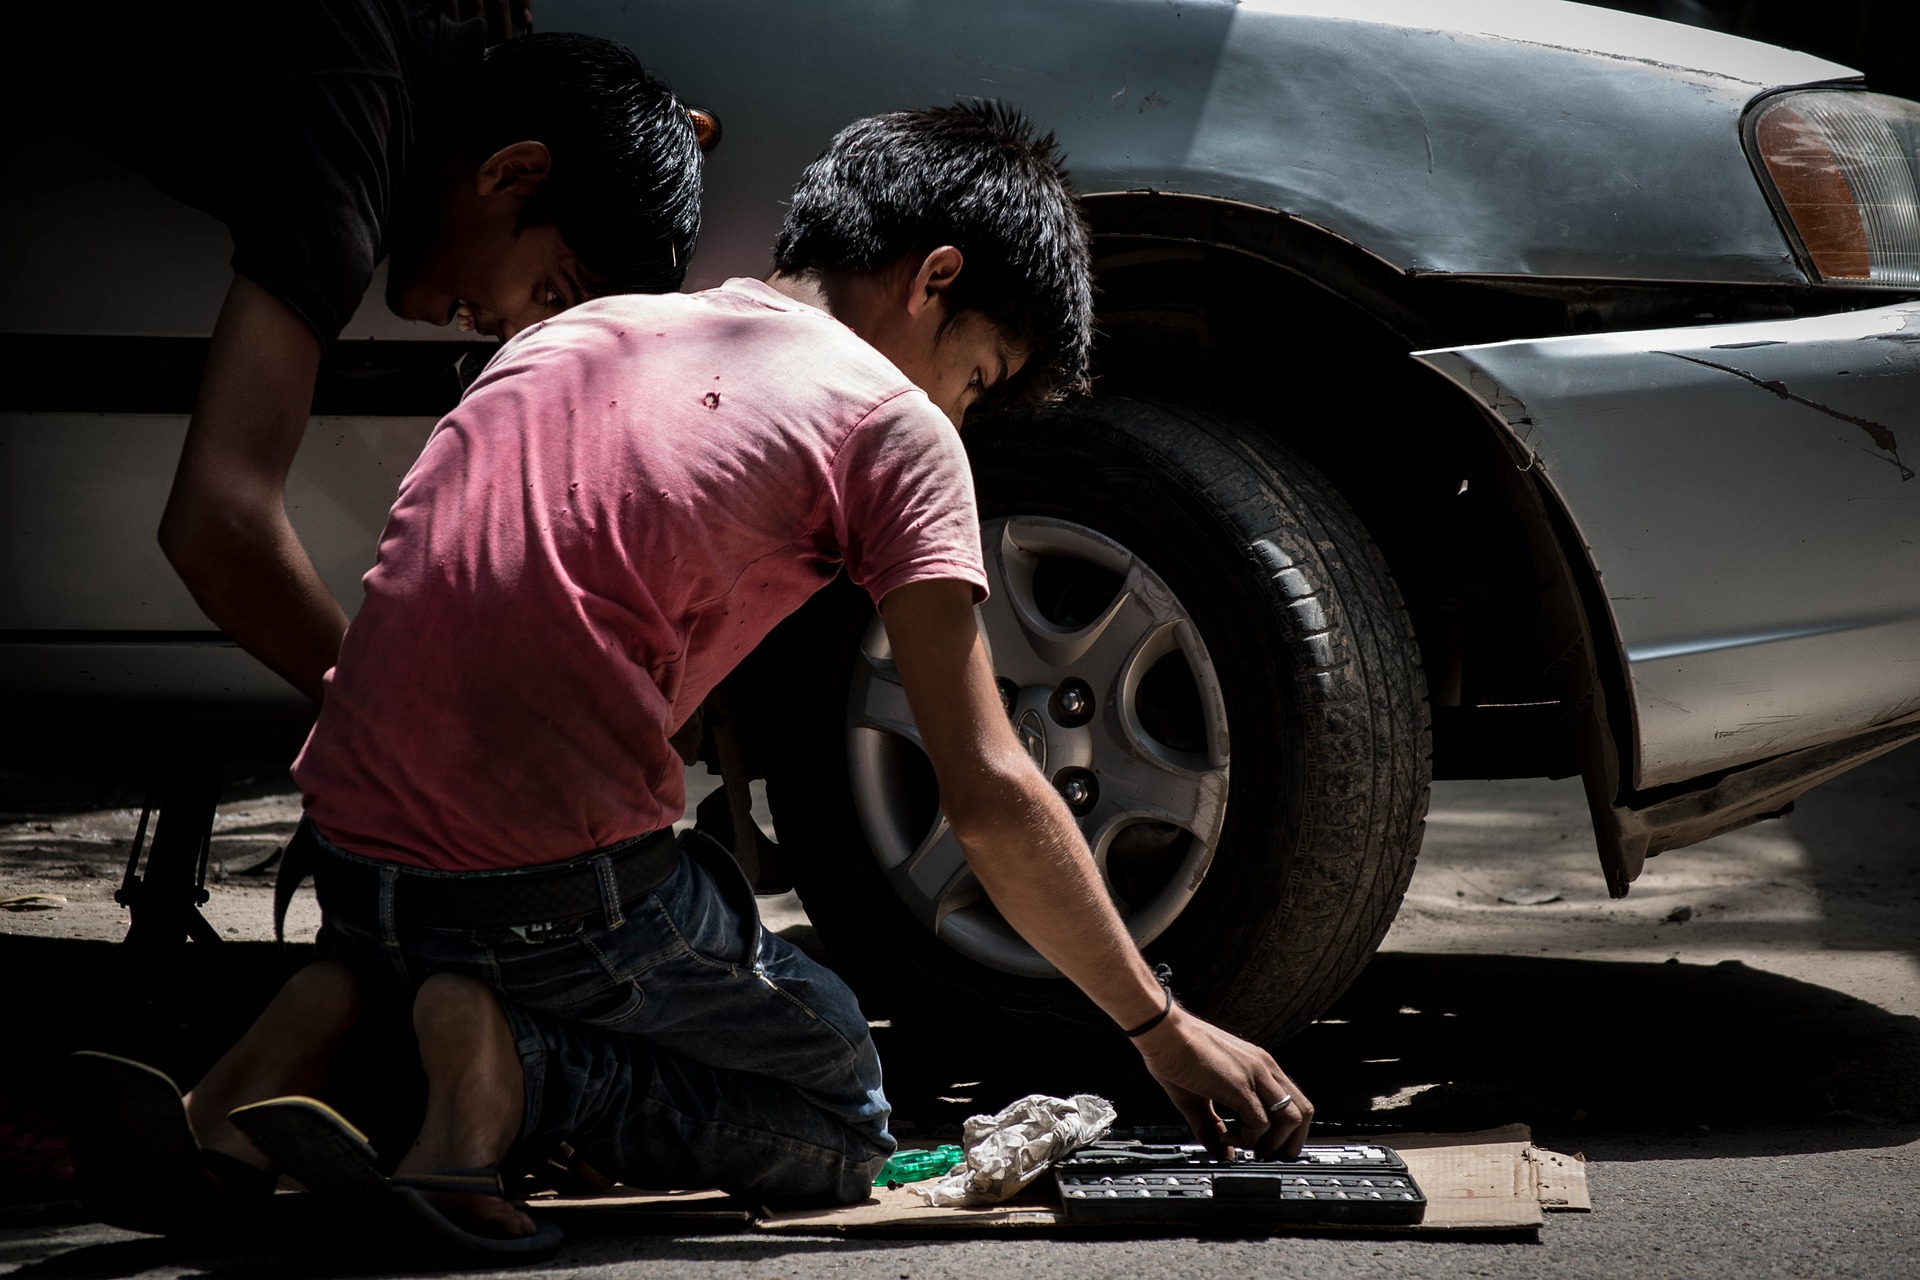 2,4 milhões de crianças e adolescentes estão em situação de trabalho infantil no Brasil